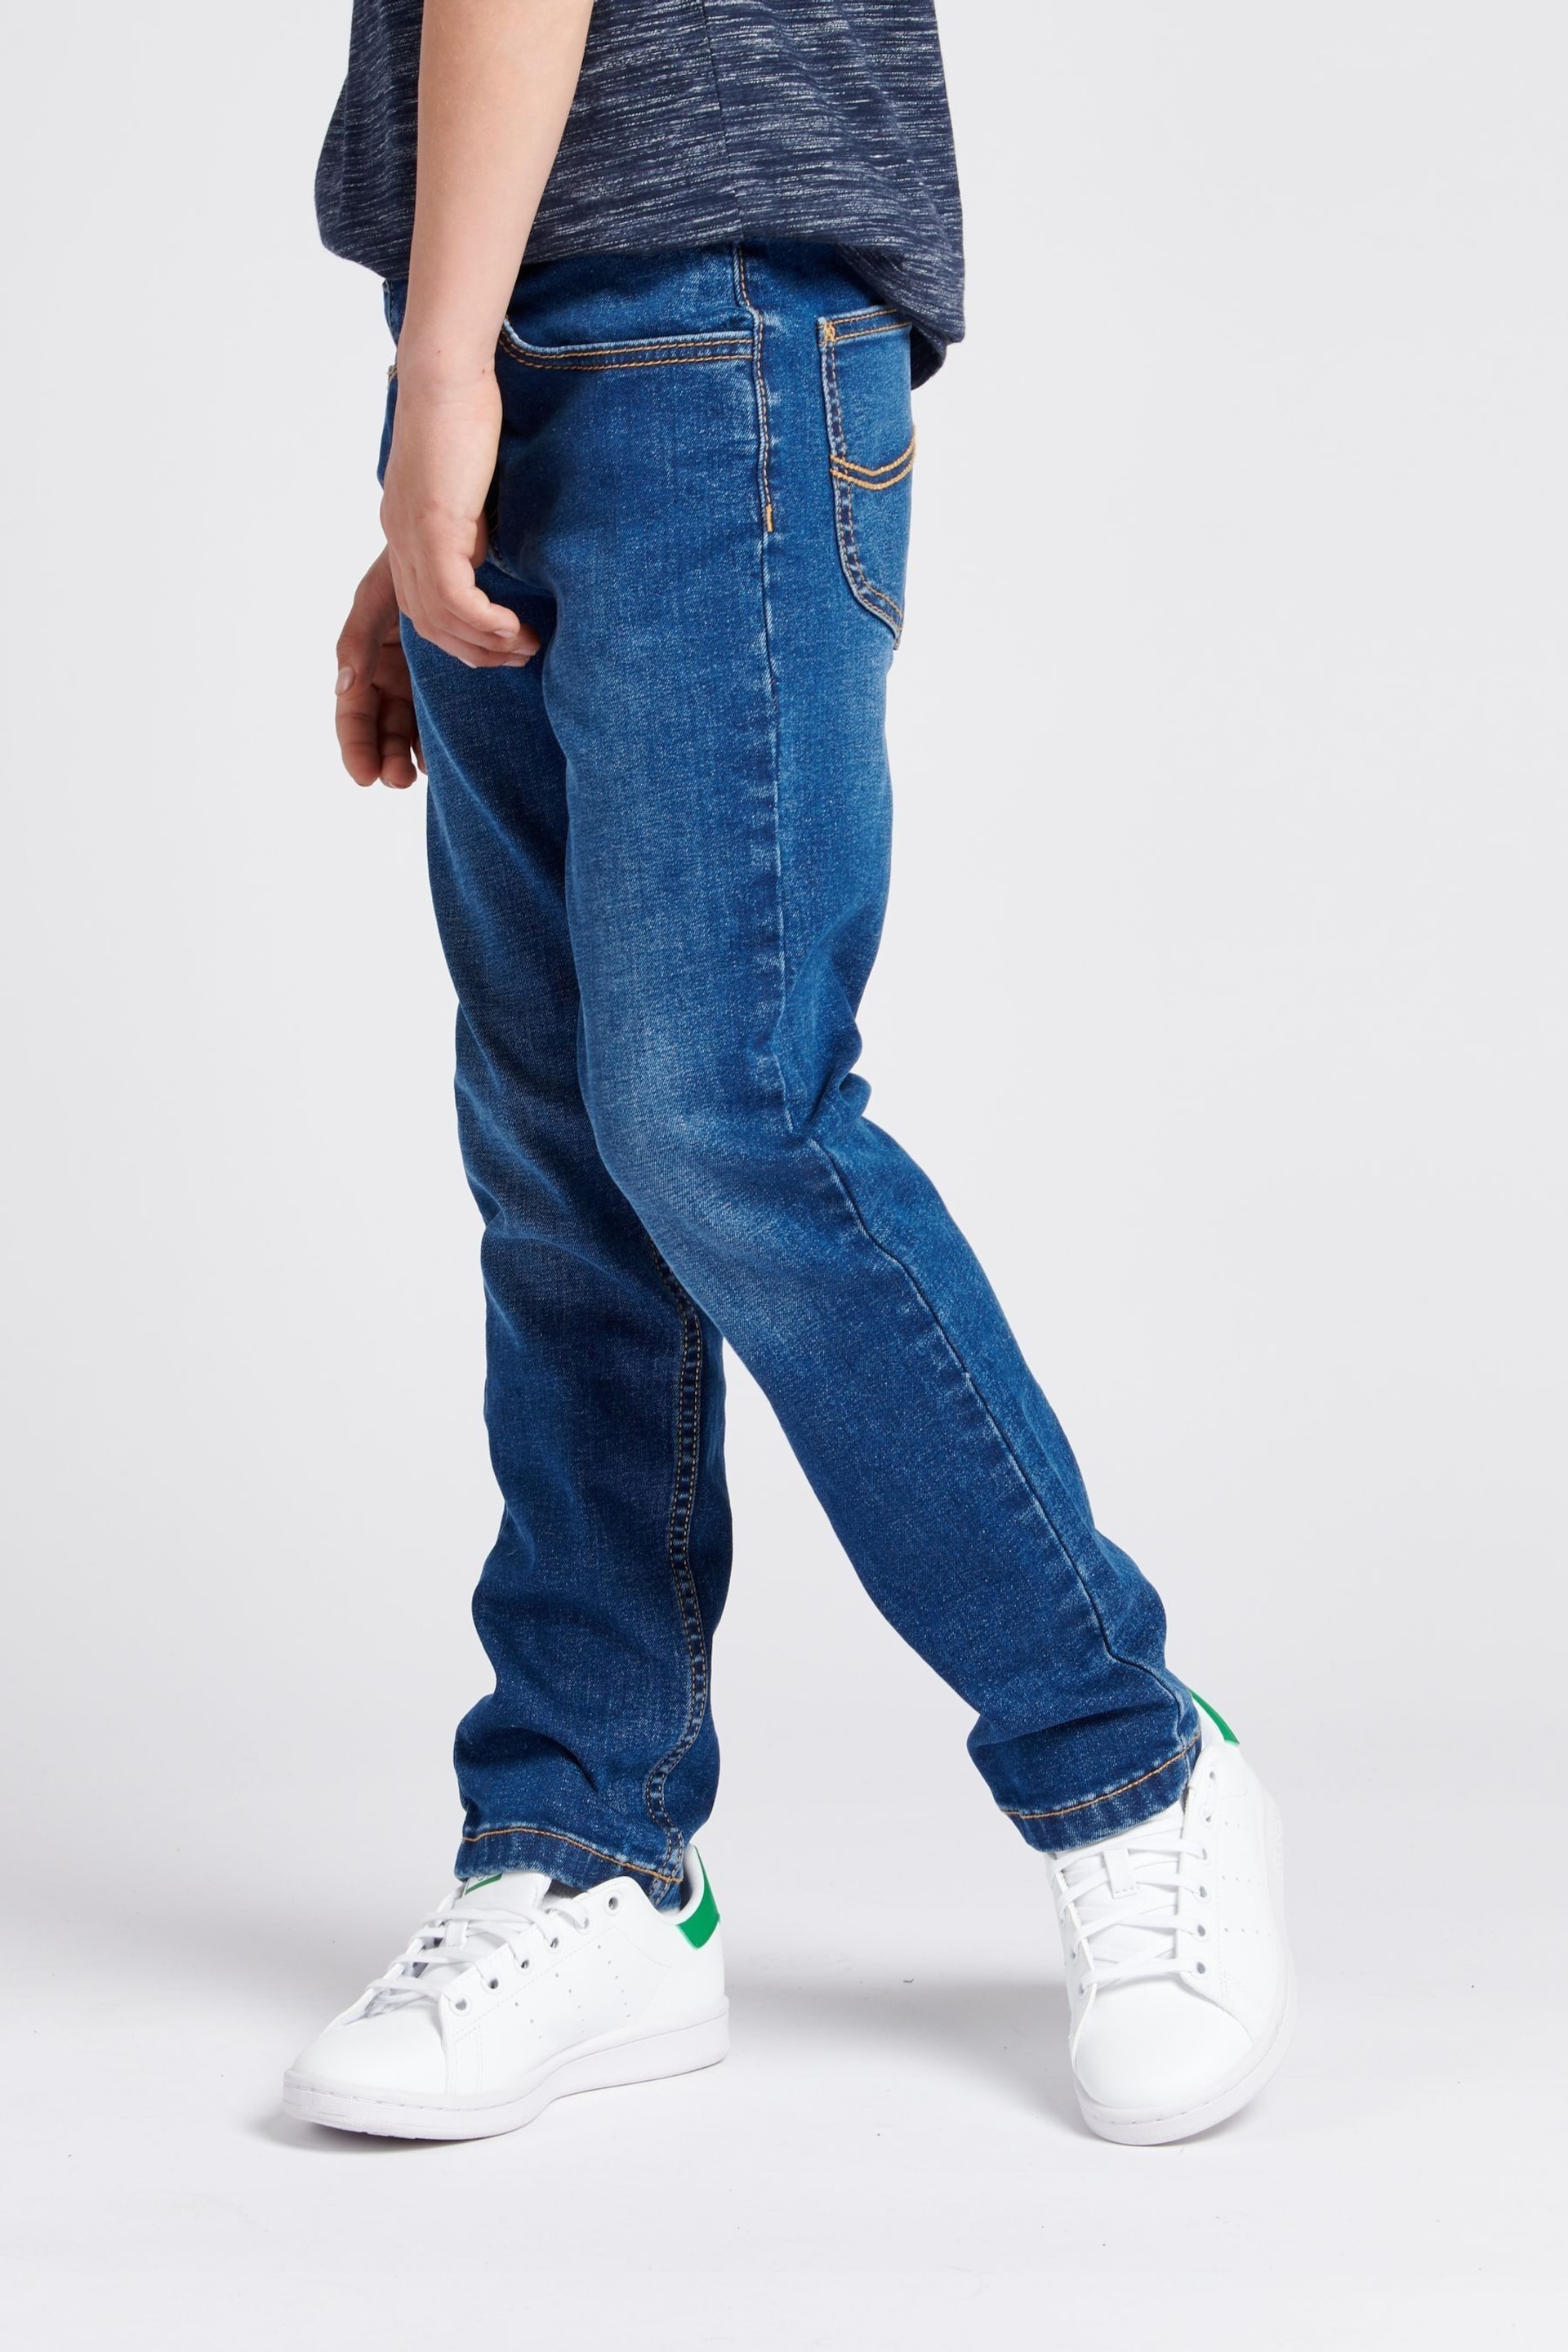 Lee Boys Luke Slim Fit Jeans - Image 3 of 9